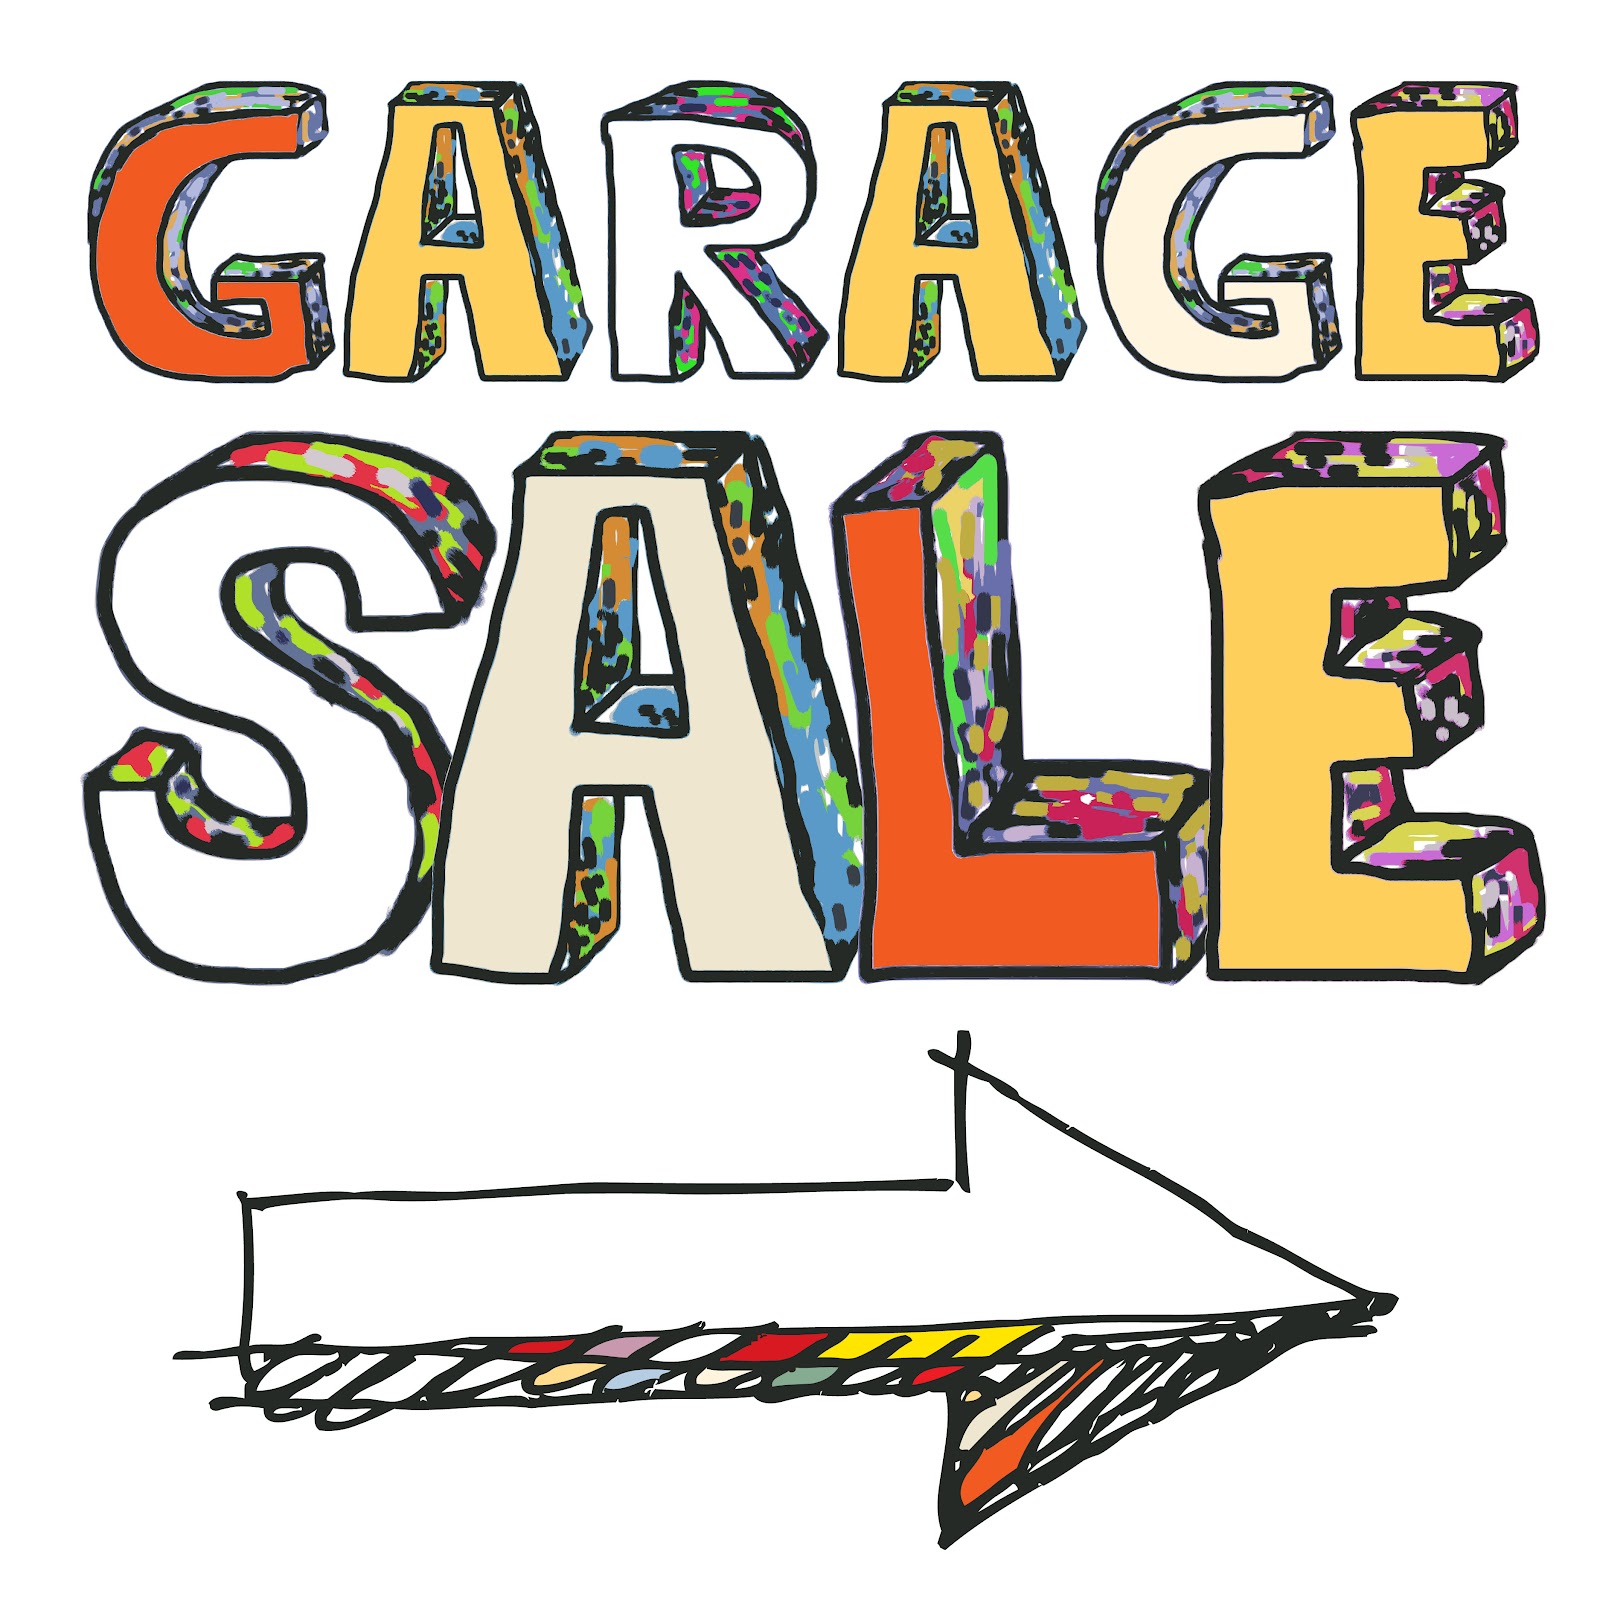 Costa Mesa CA garage sales, .